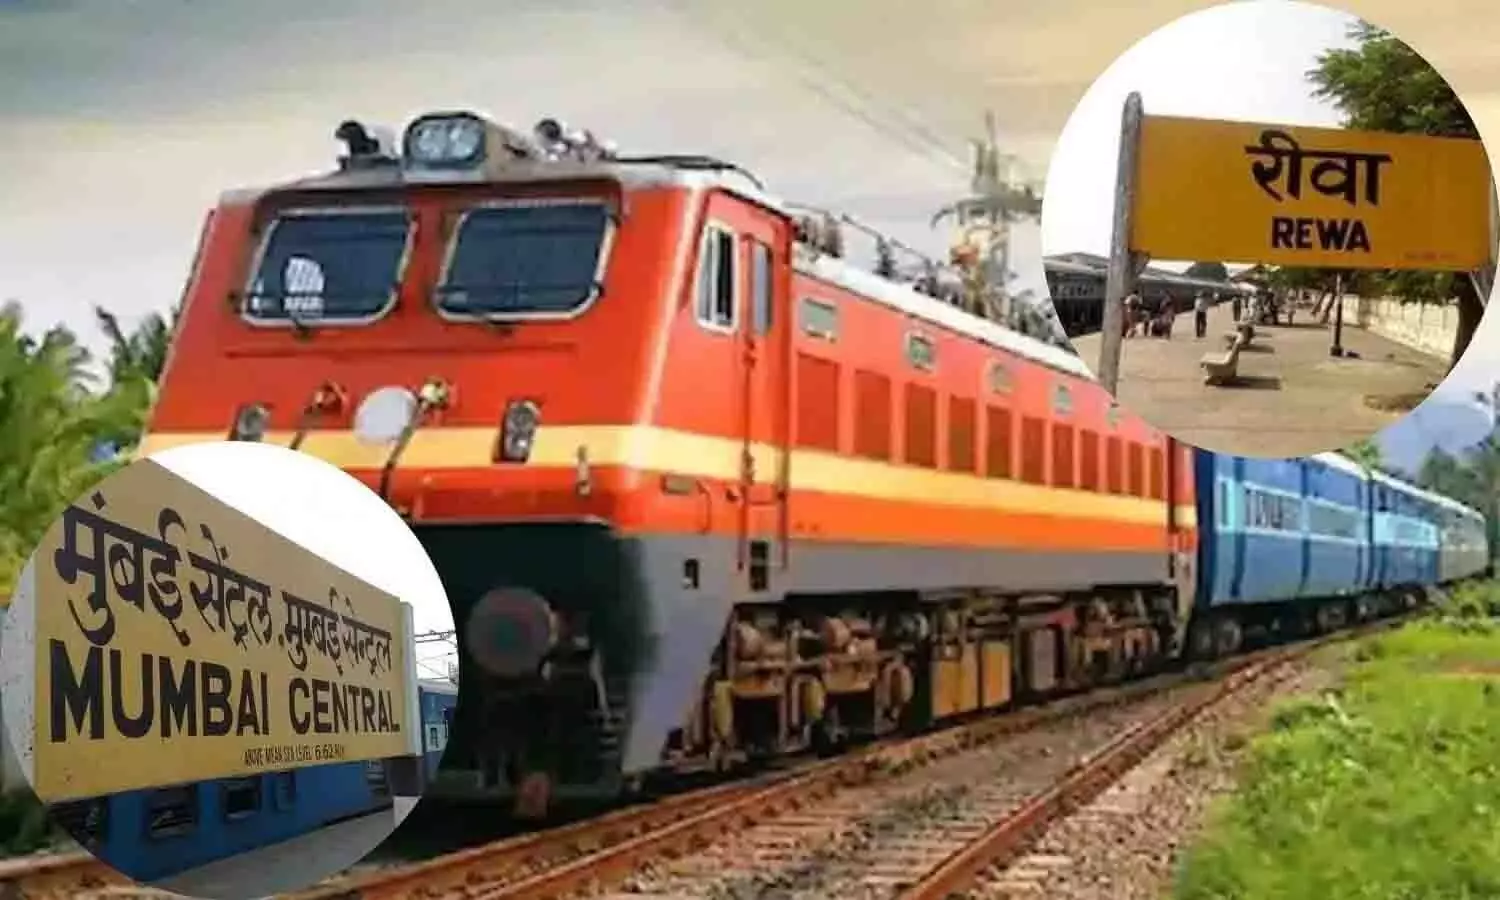 Rewa-Mumbai Train को लेकर आई लेटेस्ट अपडेट, यात्रीगण यात्रा करने से पहले ध्यान दे